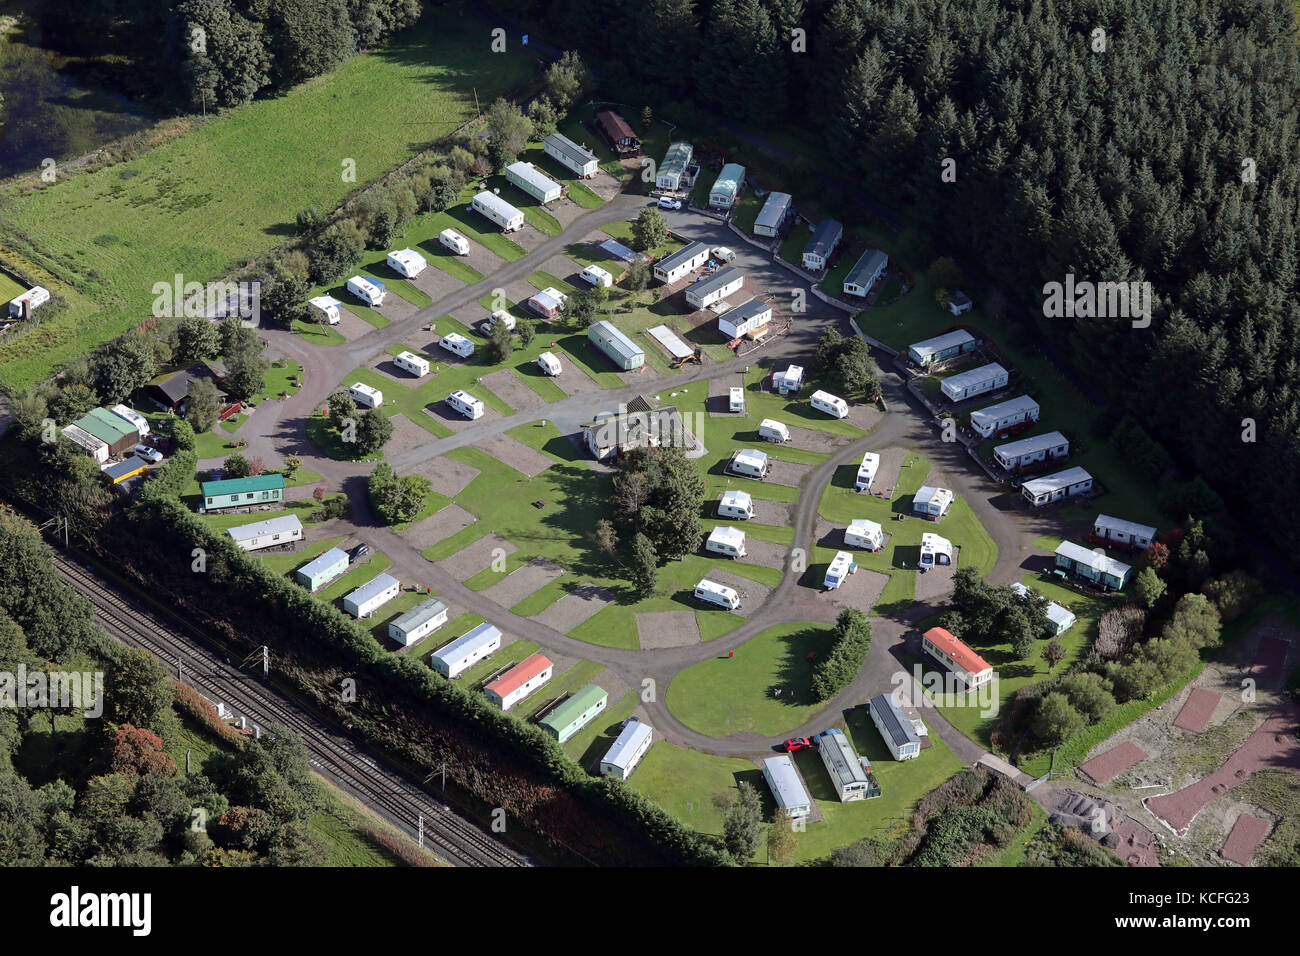 Vue aérienne de Mount View Caravan Park, Abington, sud-ouest de l'Écosse, Royaume-Uni Banque D'Images